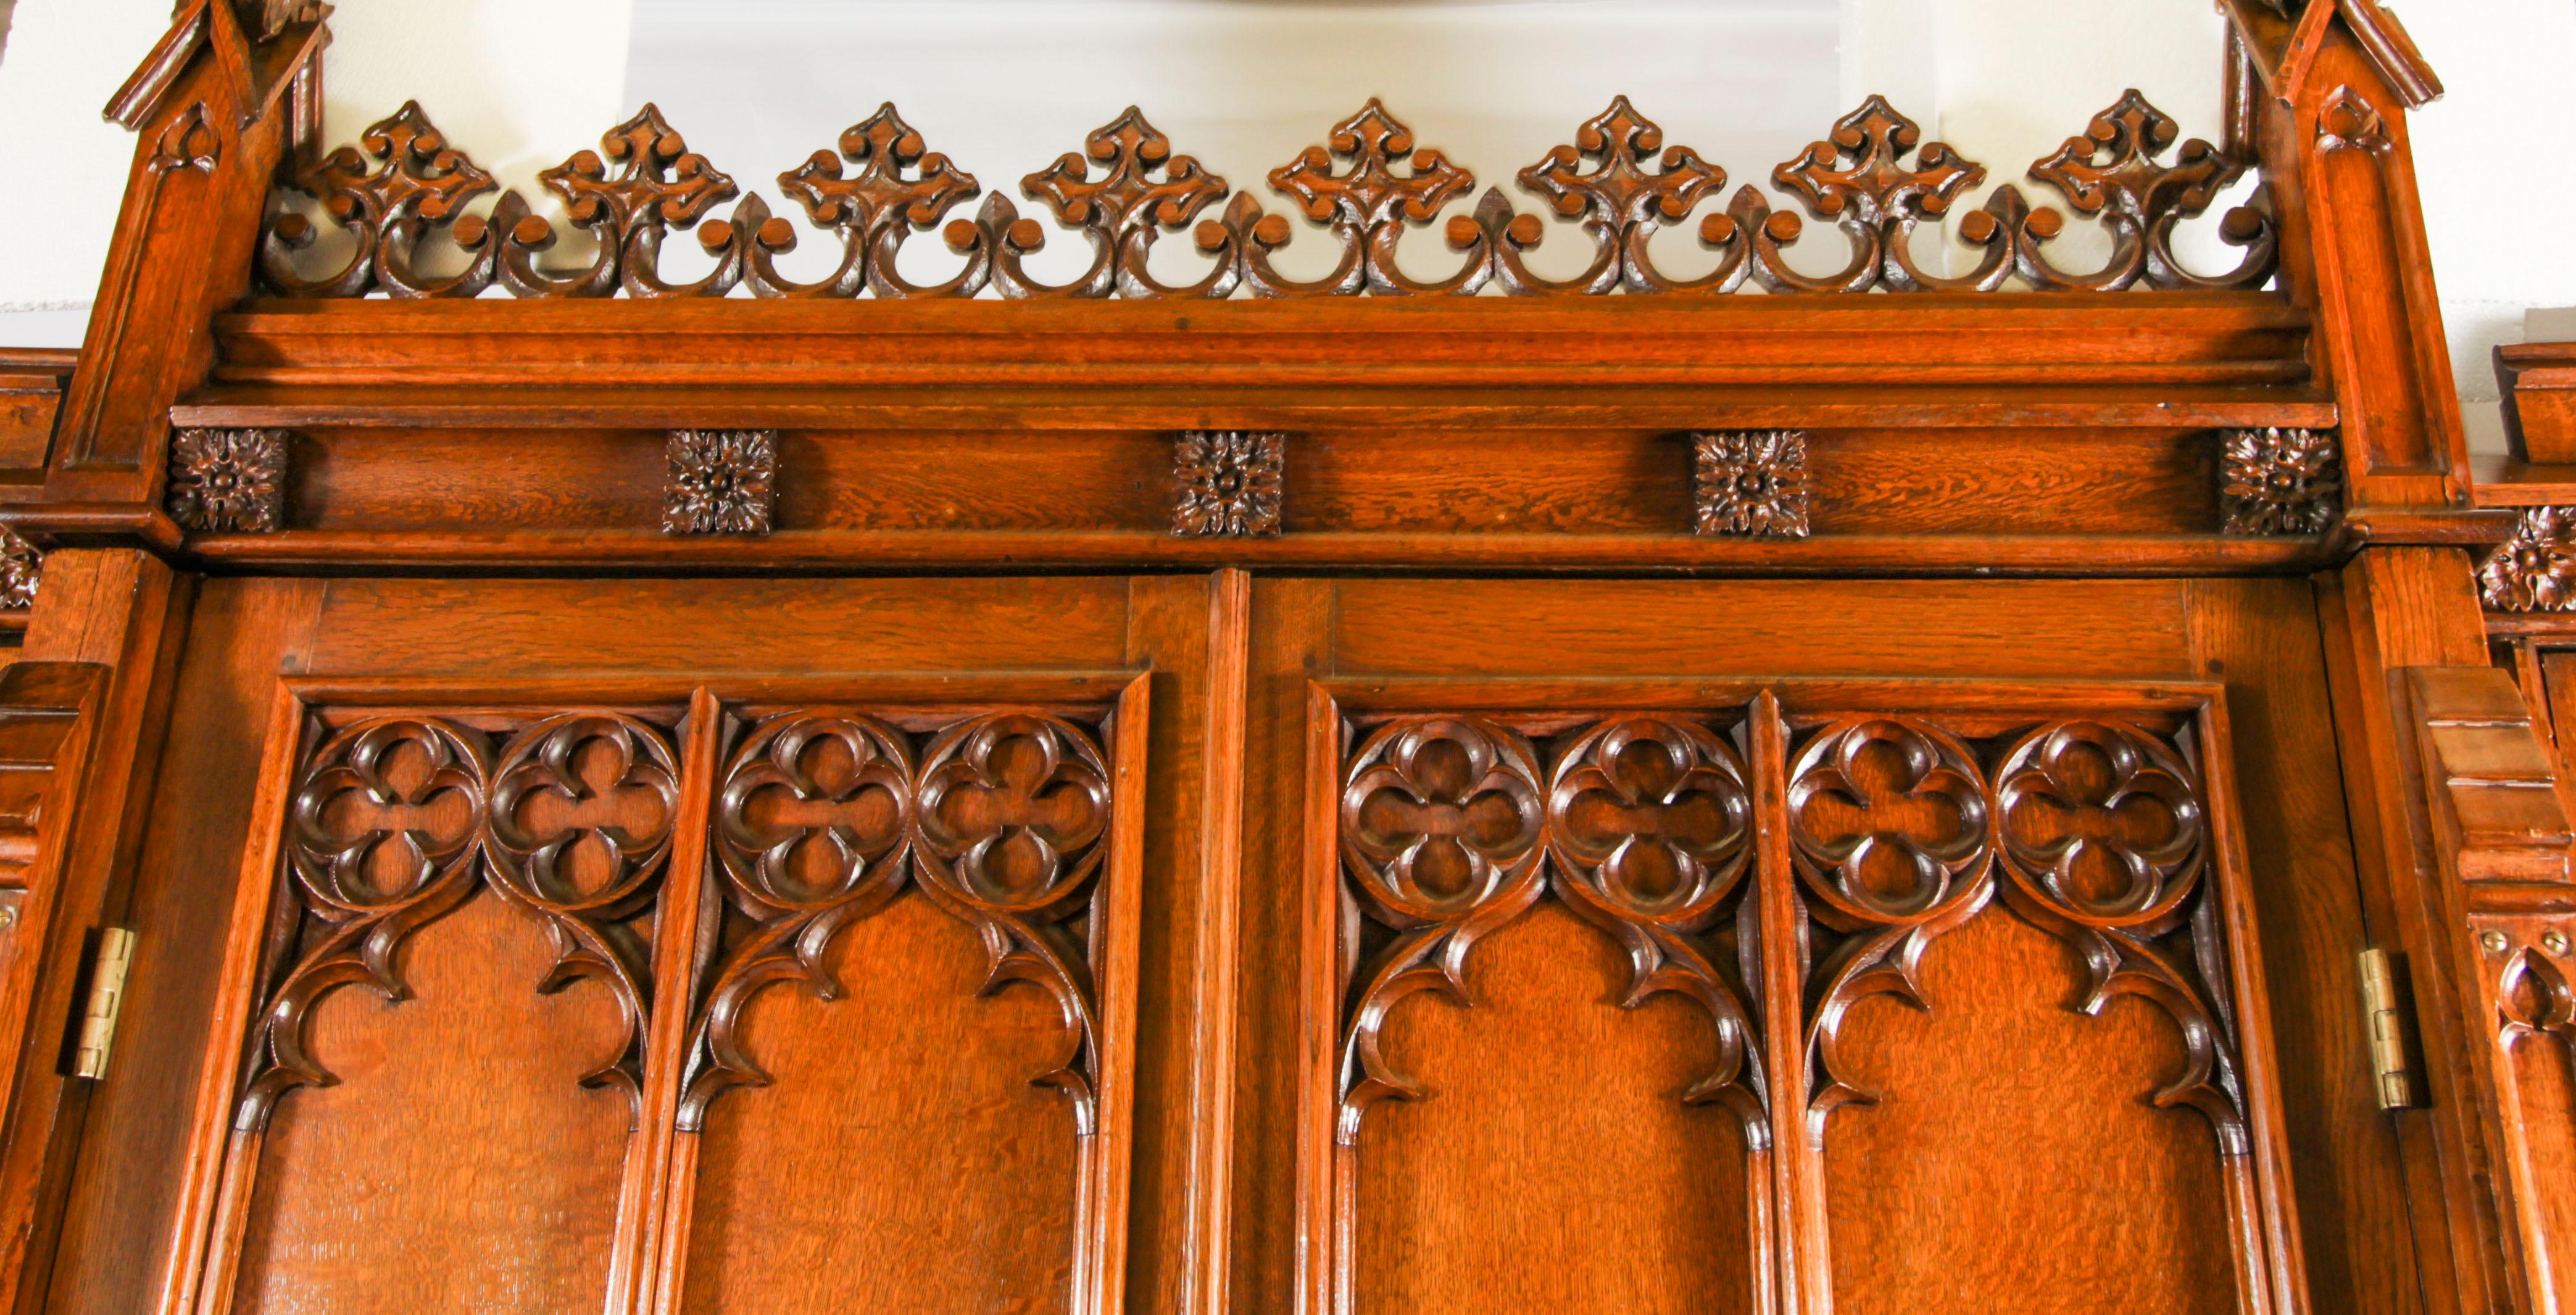 Superbe armoire de style néo-gothique victorien en chêne, à la manière de Thomas King, datant de 1840 environ.
 
La partie centrale, la plus grande, présente un fronton cruciforme alternativement sculpté en C et en volutes, avec des pinacles à